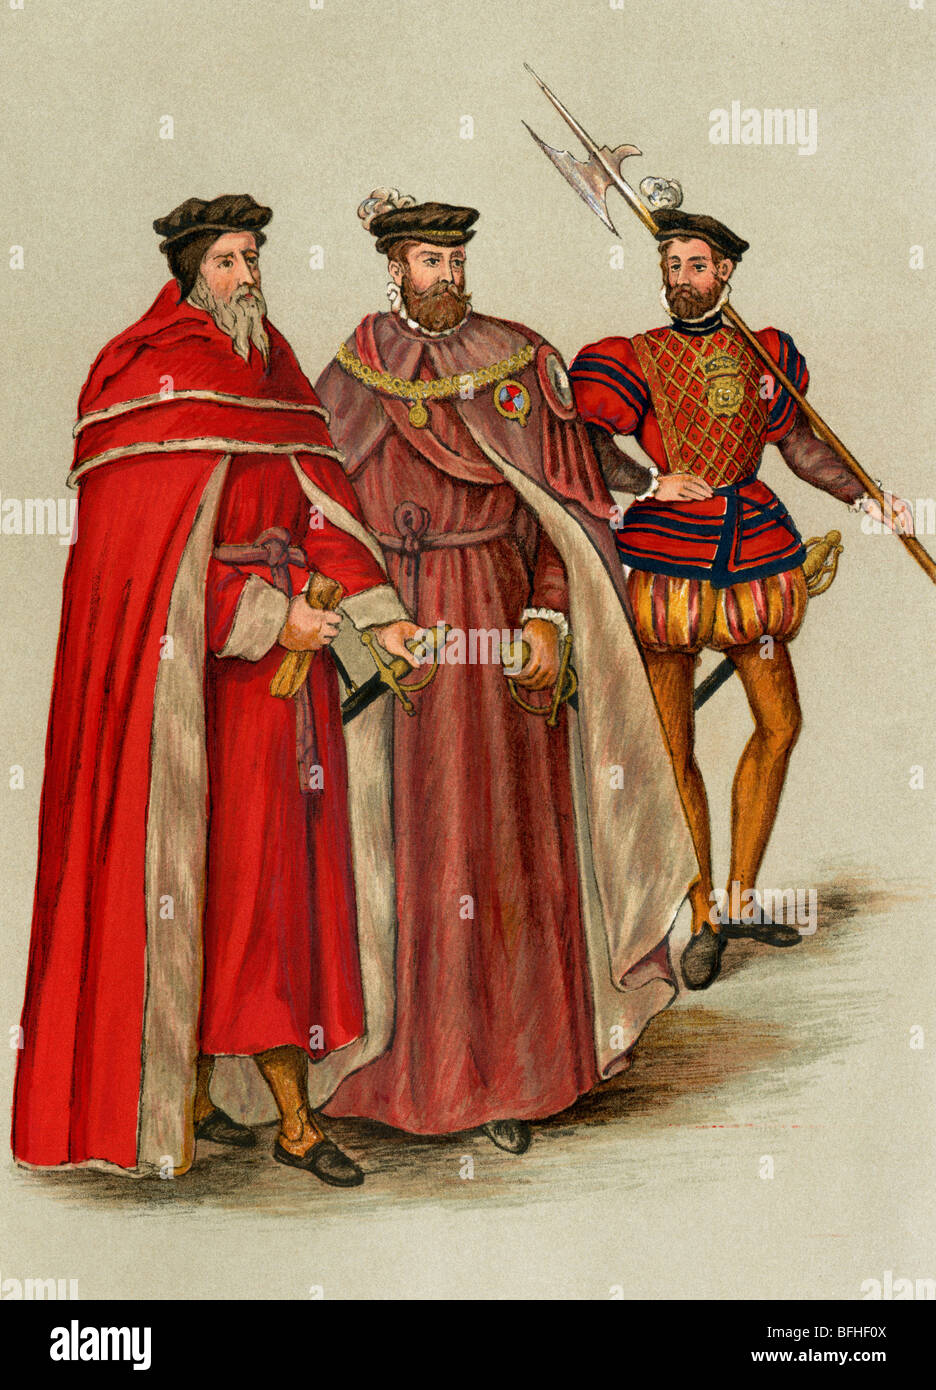 Deux homologues, dans leurs robes, et un halberdier pendant le règne d'Elizabeth, années 1500. Lithographie couleur Banque D'Images